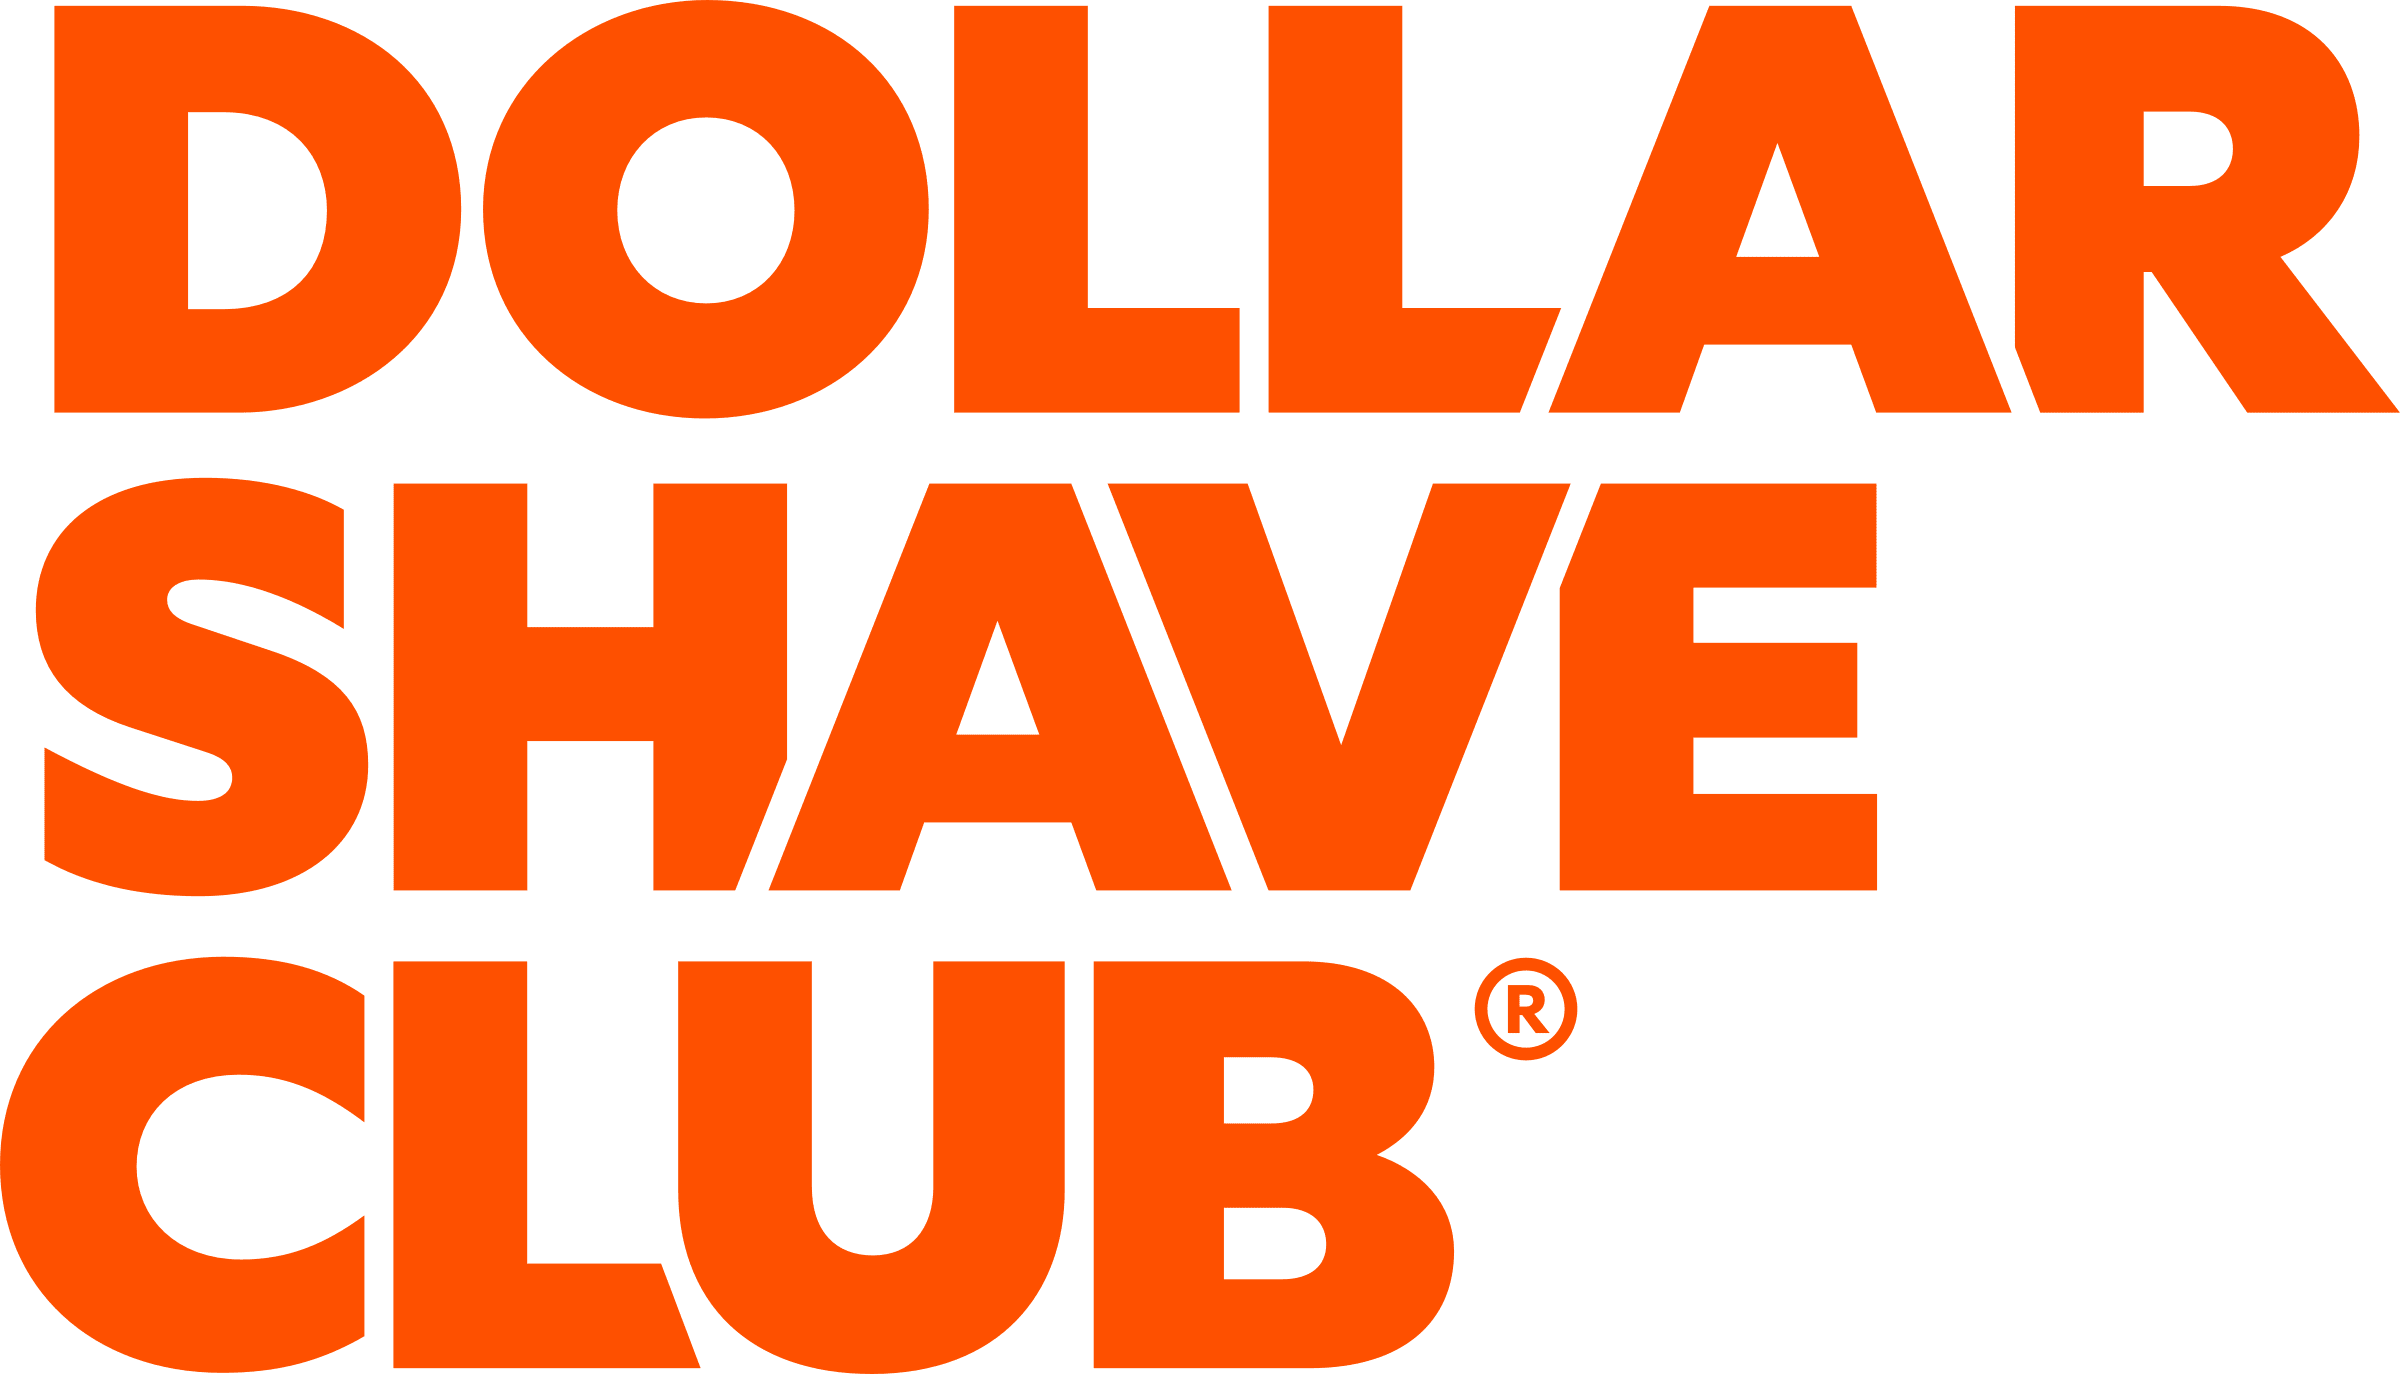 Dollar Shave Club UK